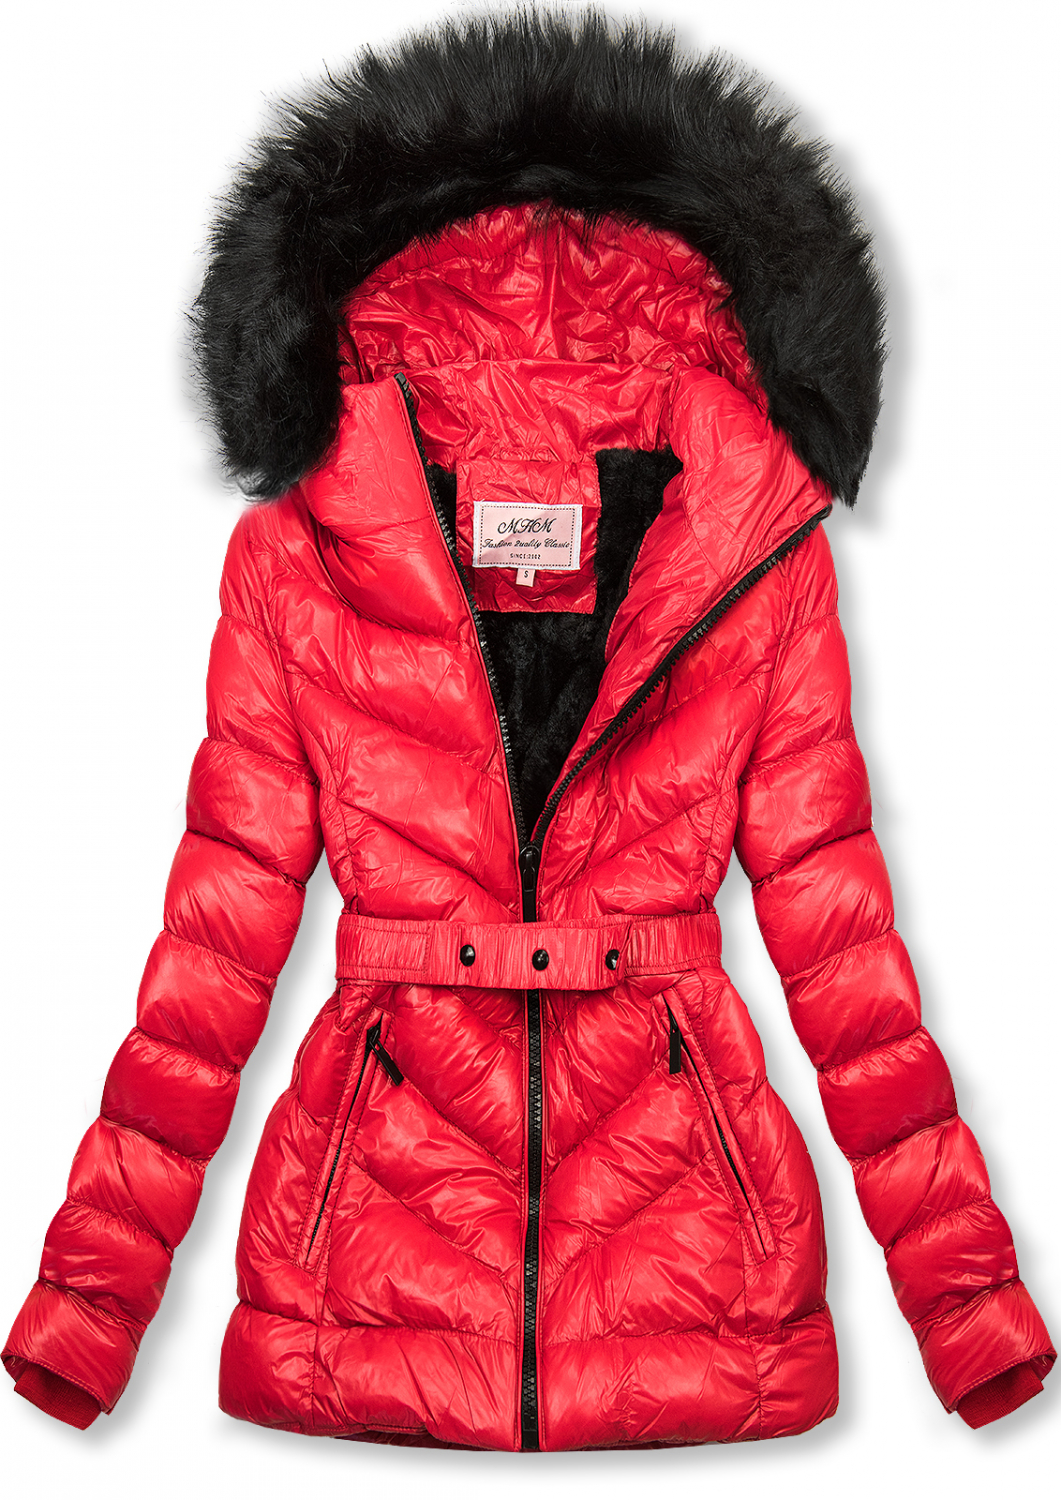 Červená zimná krátka bunda s čiernou kožušinou.
- neodopínateľná kapucňa
- odnímateľná kožušina
- zapínanie na zips
- v prednej časti 2 vrecká 
- vnútro zateplené plyšom
- s opaskom
- materiál: 100% polyester, podšívka: 100% polyester